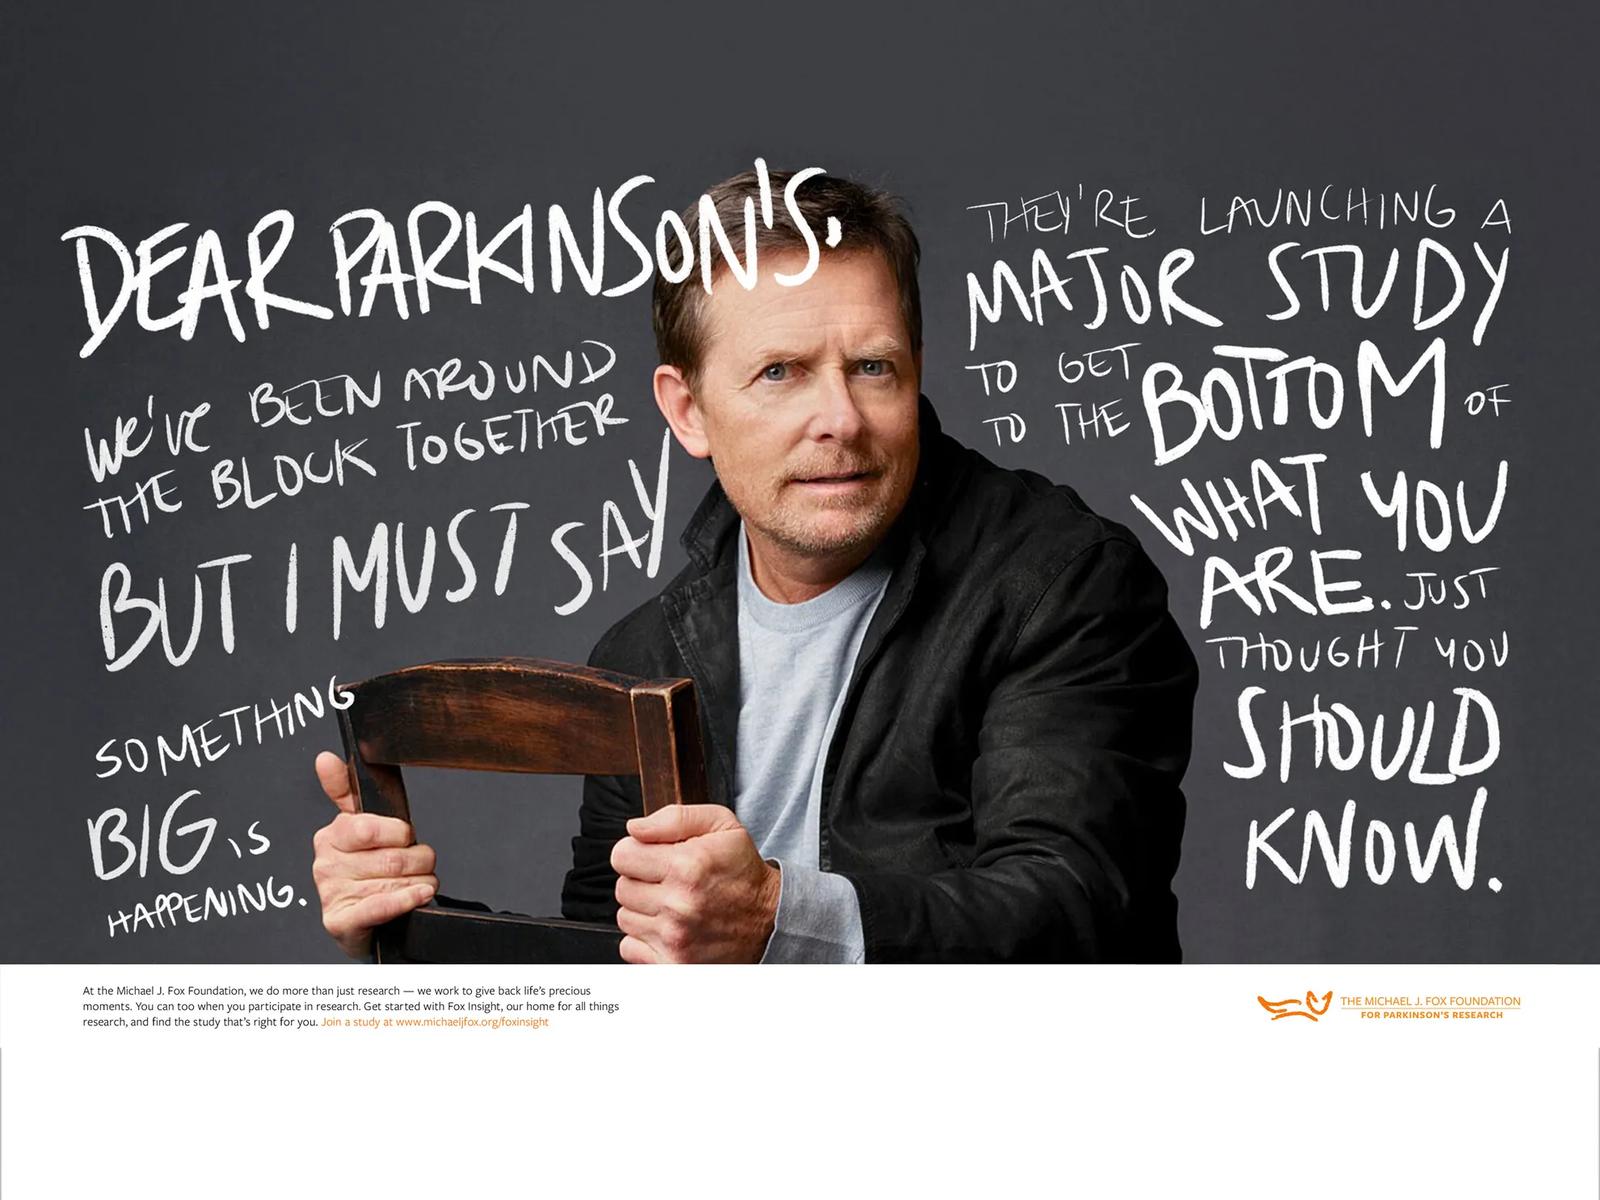 The Michael J. Fox Foundation: “Dear Parkinson’s”